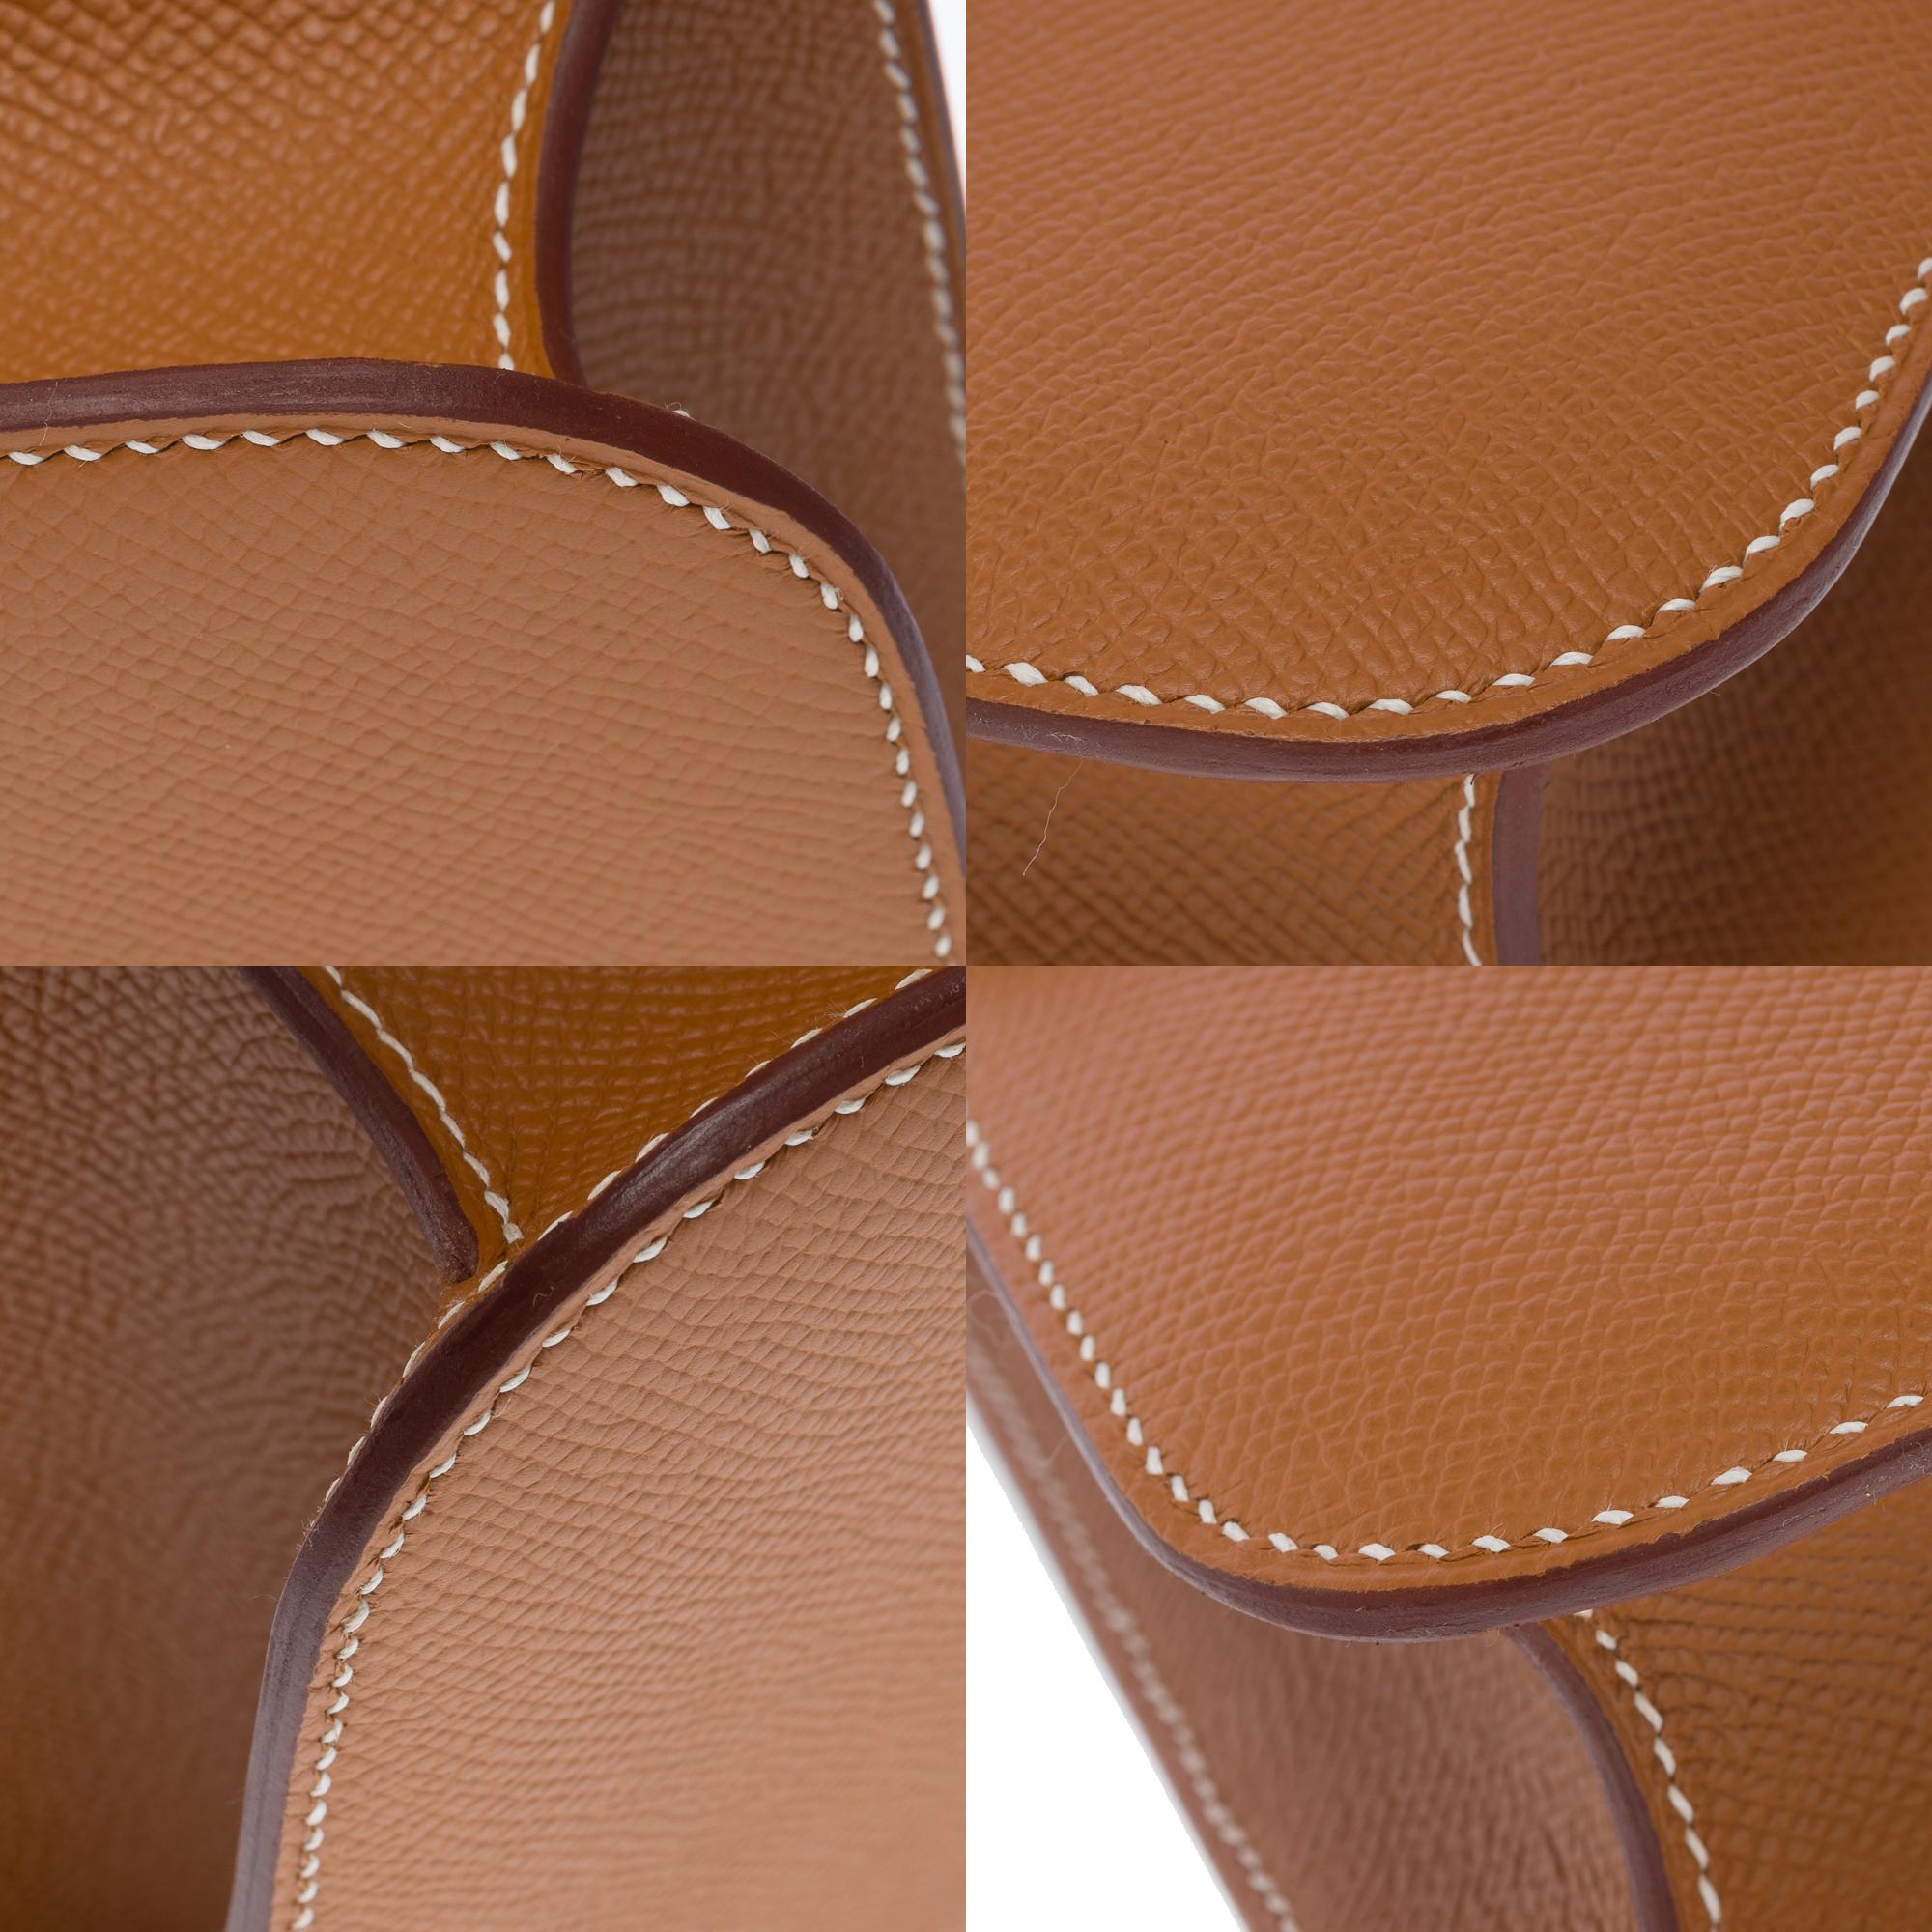 Brand New Hermès Constance 23 shoulder bag in Gold Epsom leather , GHW 6